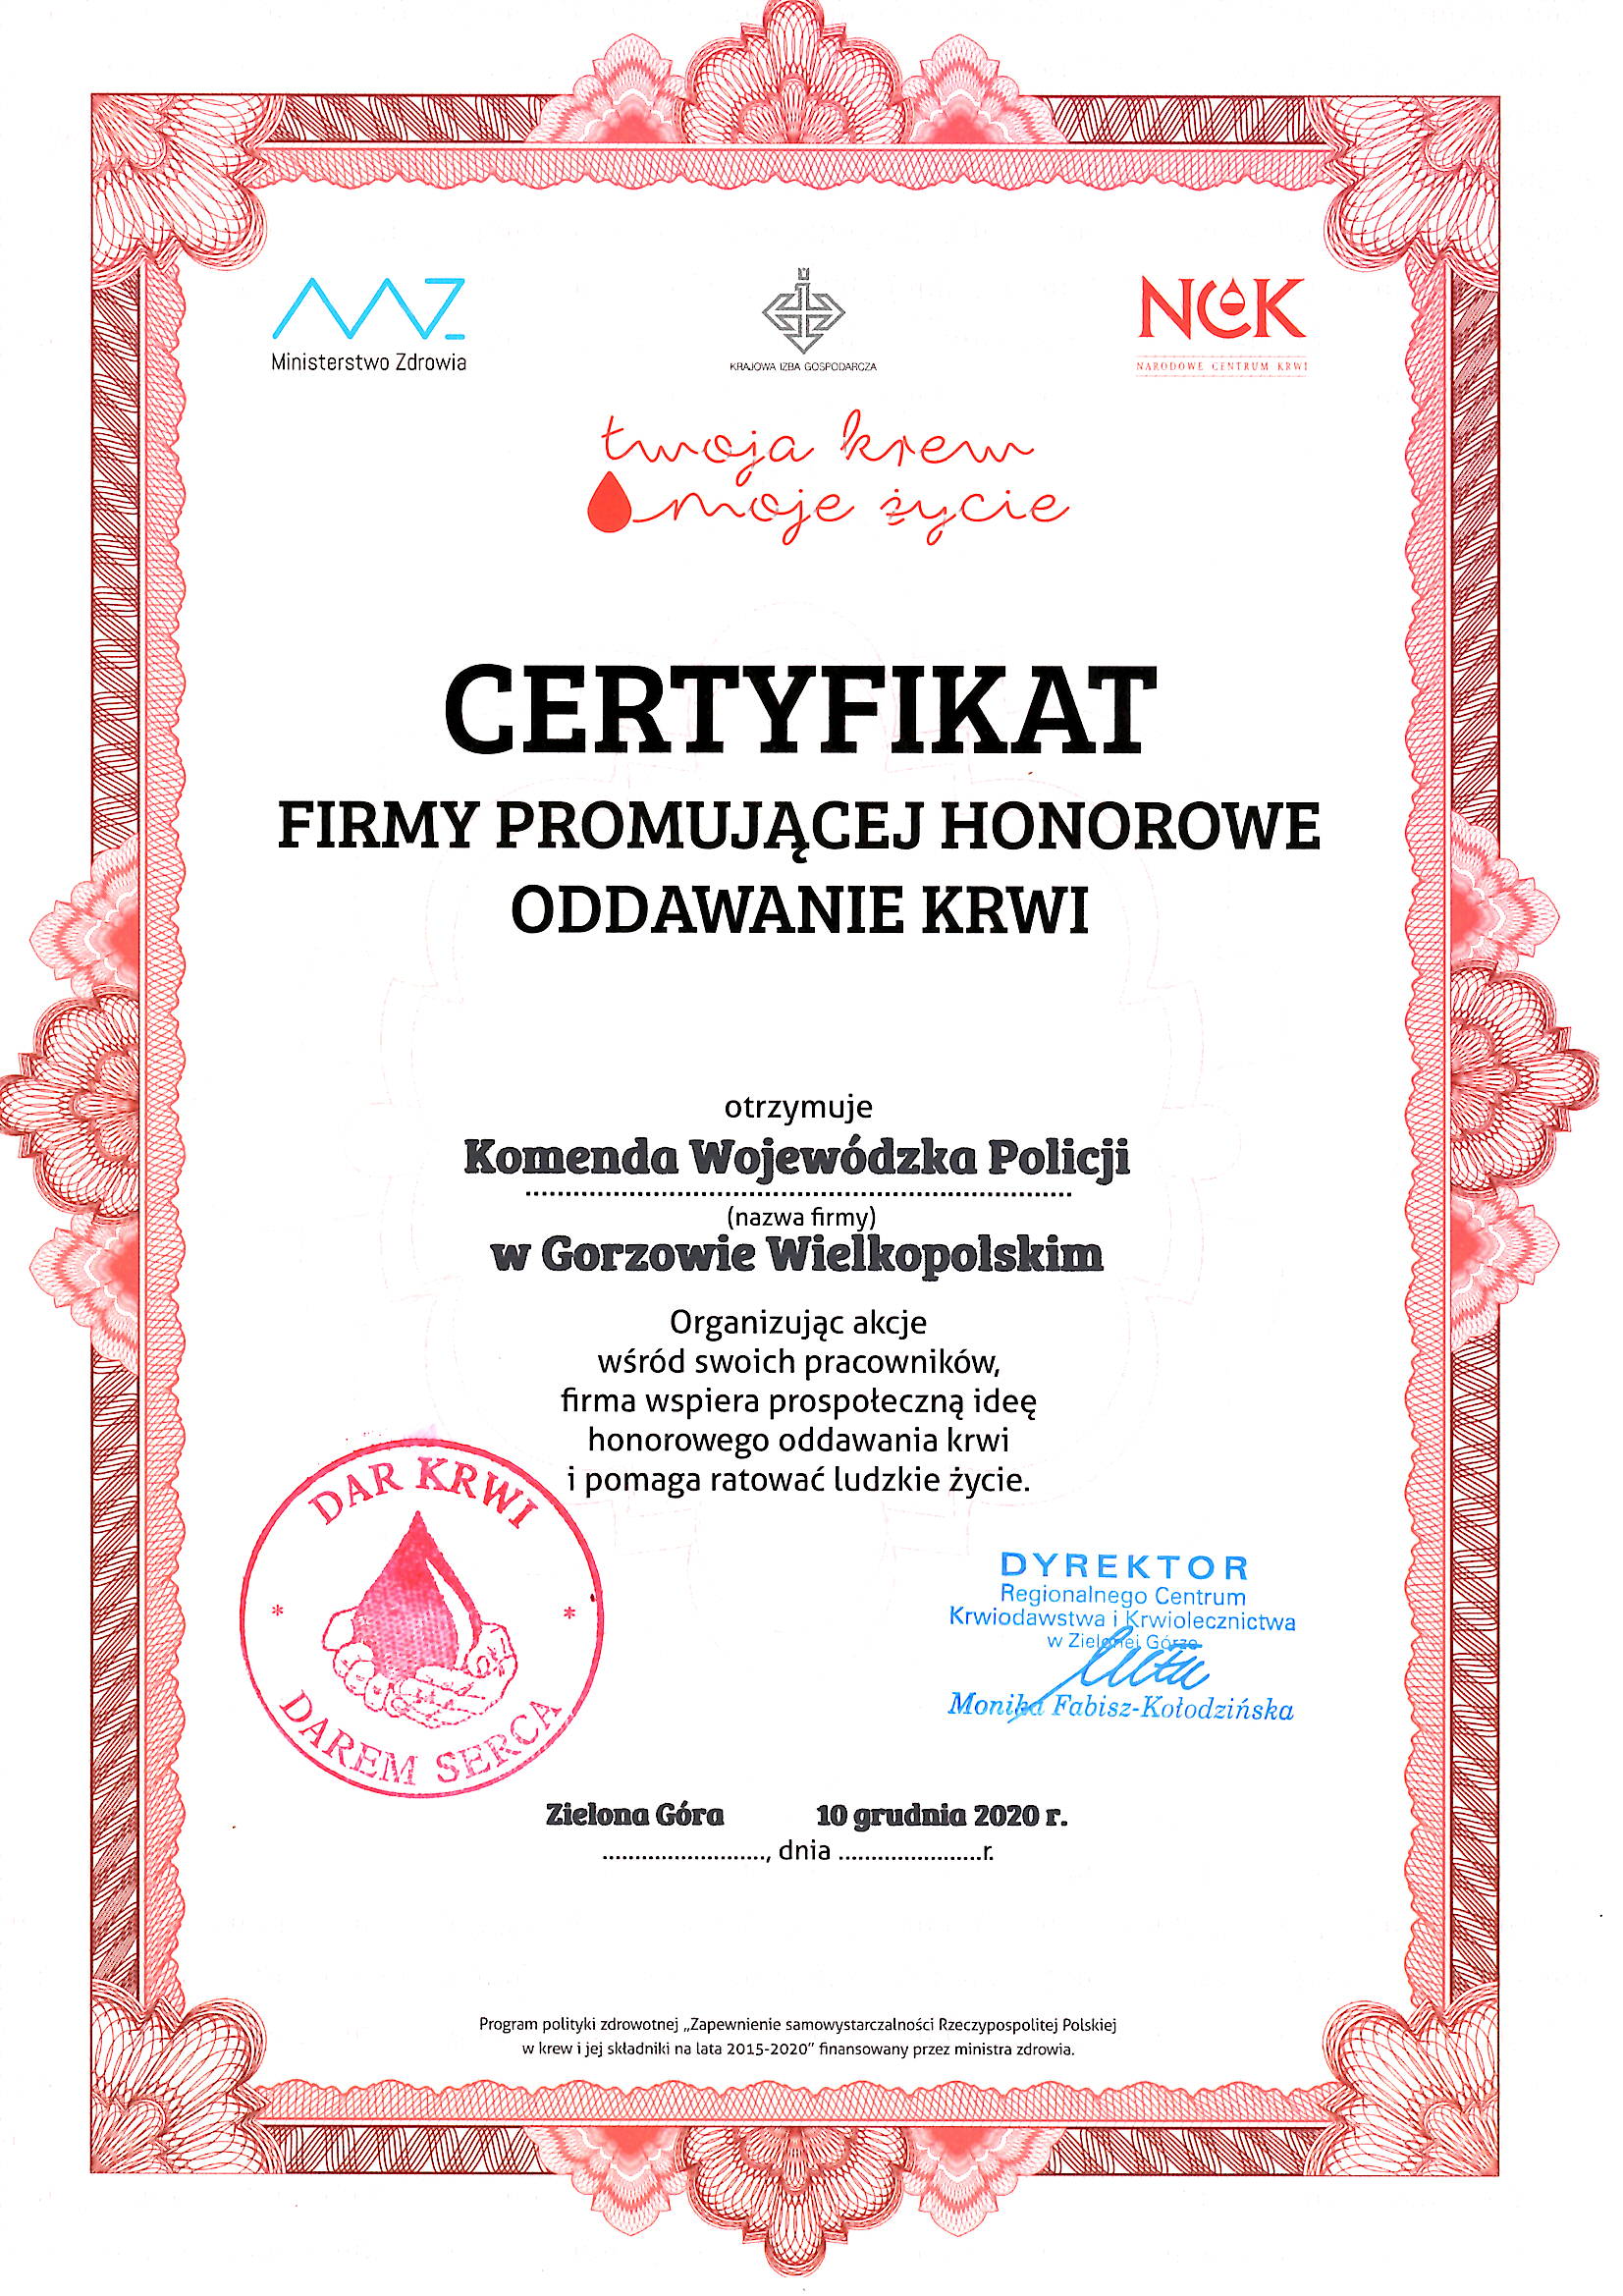 Certyfikat firmy promującej honorewo oddawanie Krwi